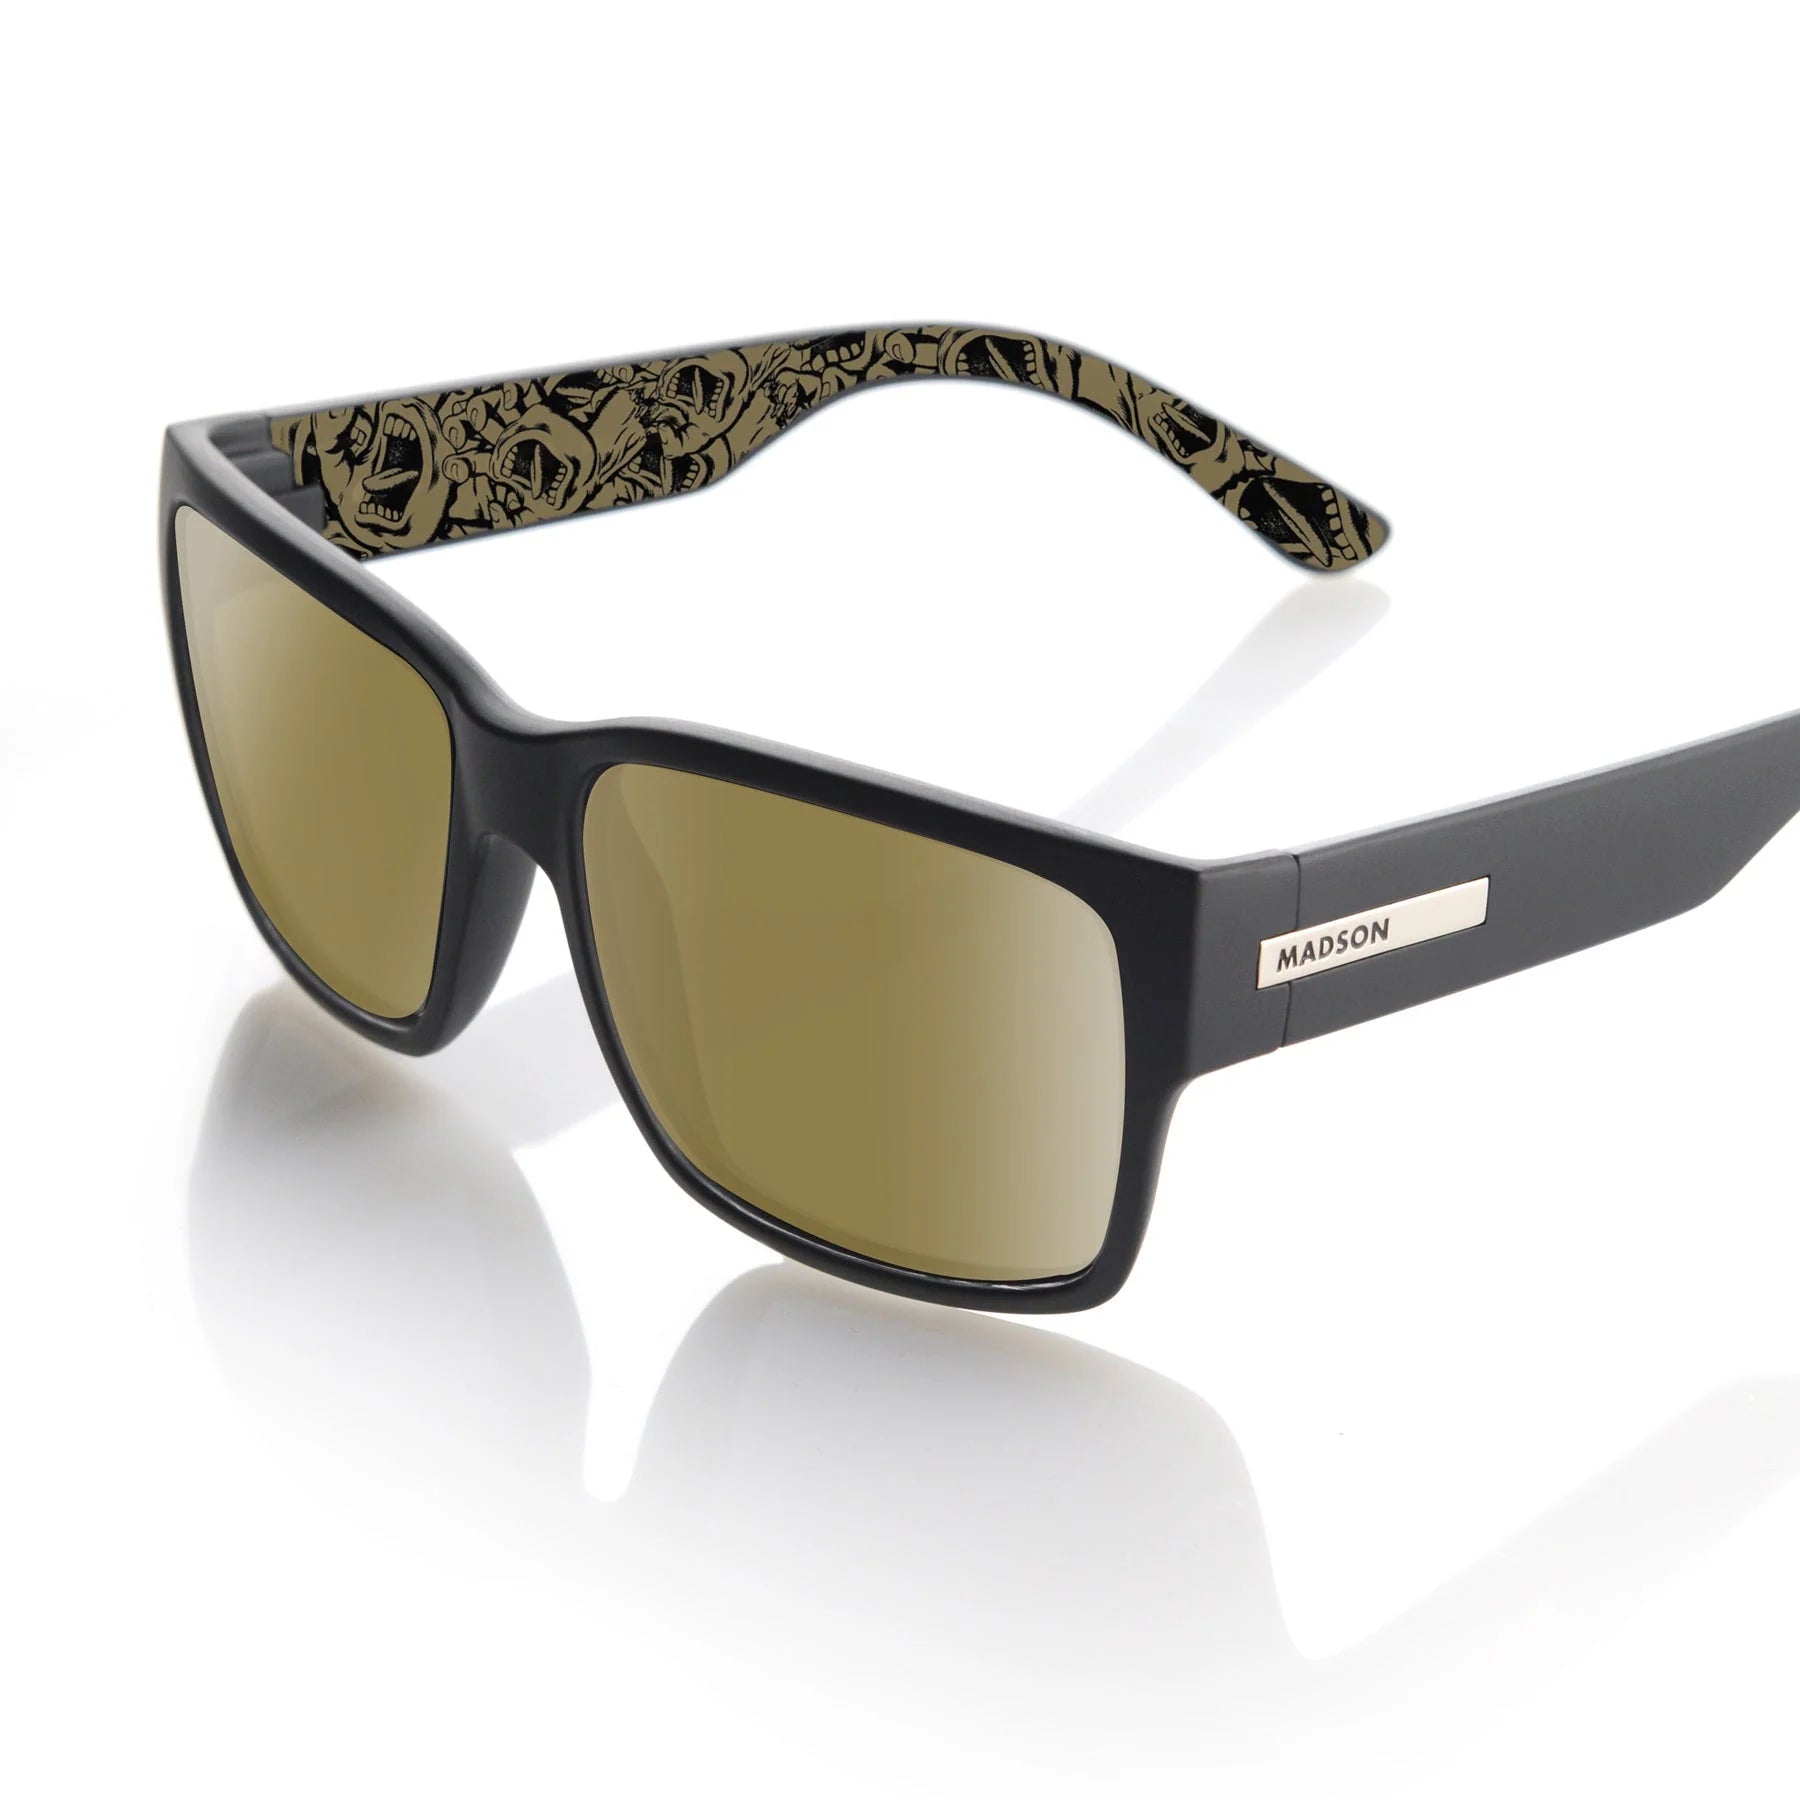 Madson Classico Sunglasses Santa Cruz 50th / Gold Mirror Polarized